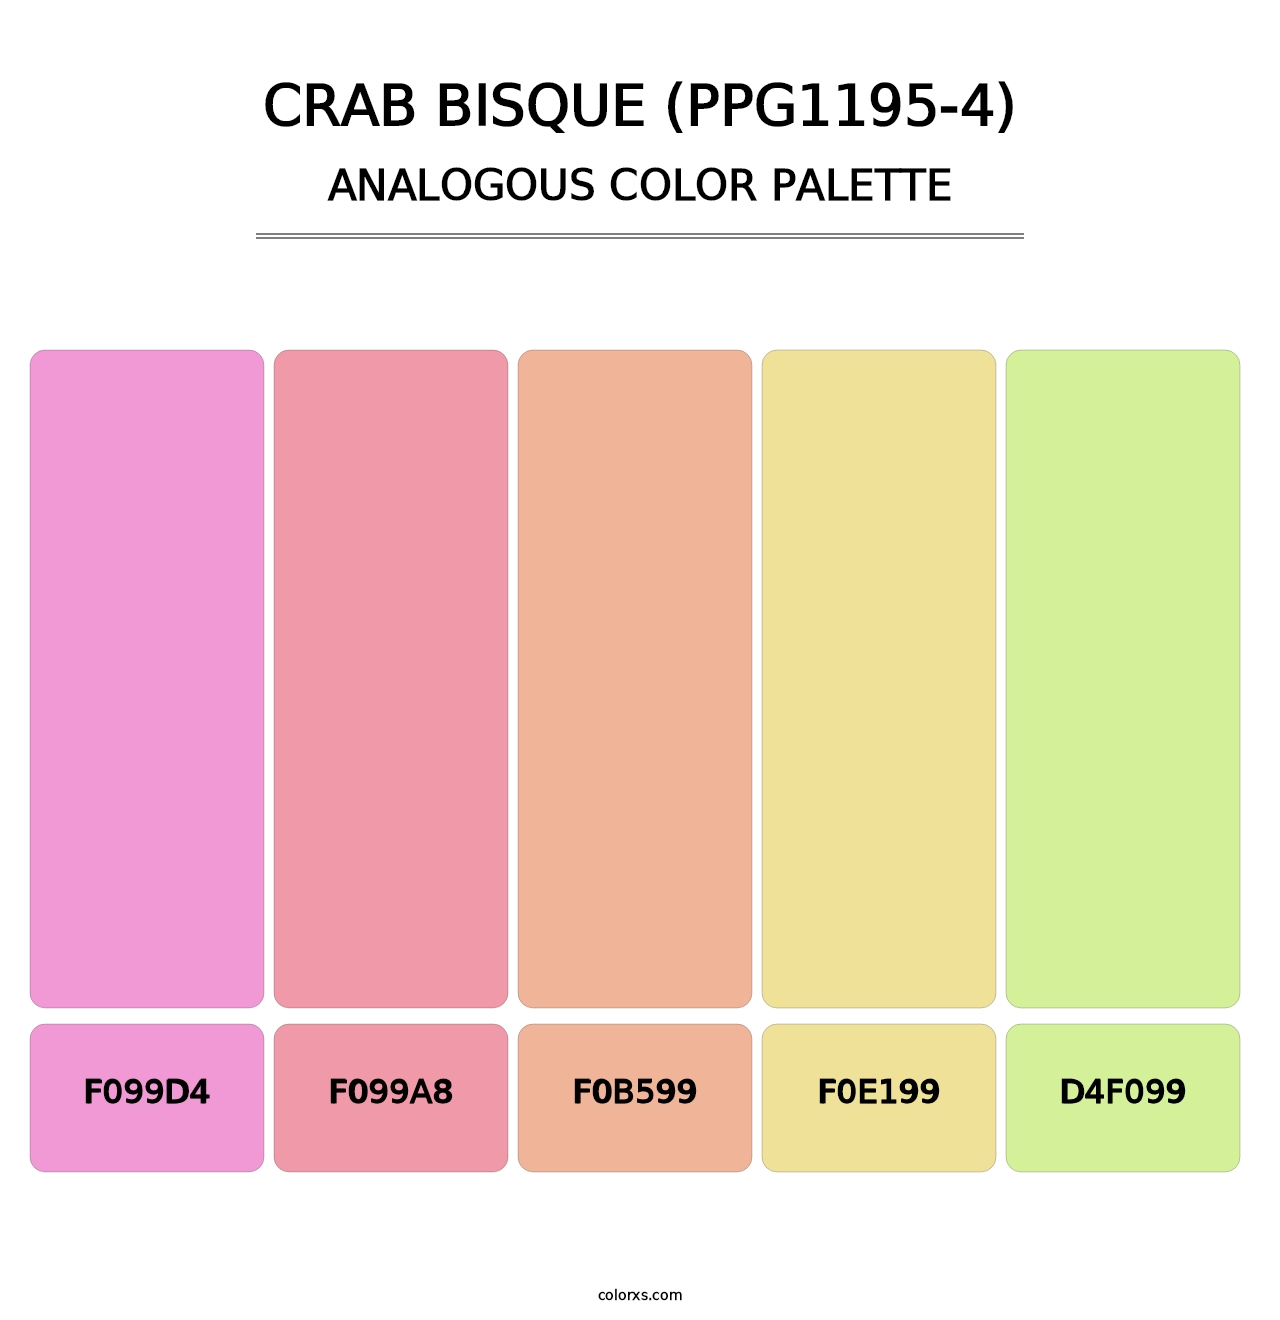 Crab Bisque (PPG1195-4) - Analogous Color Palette